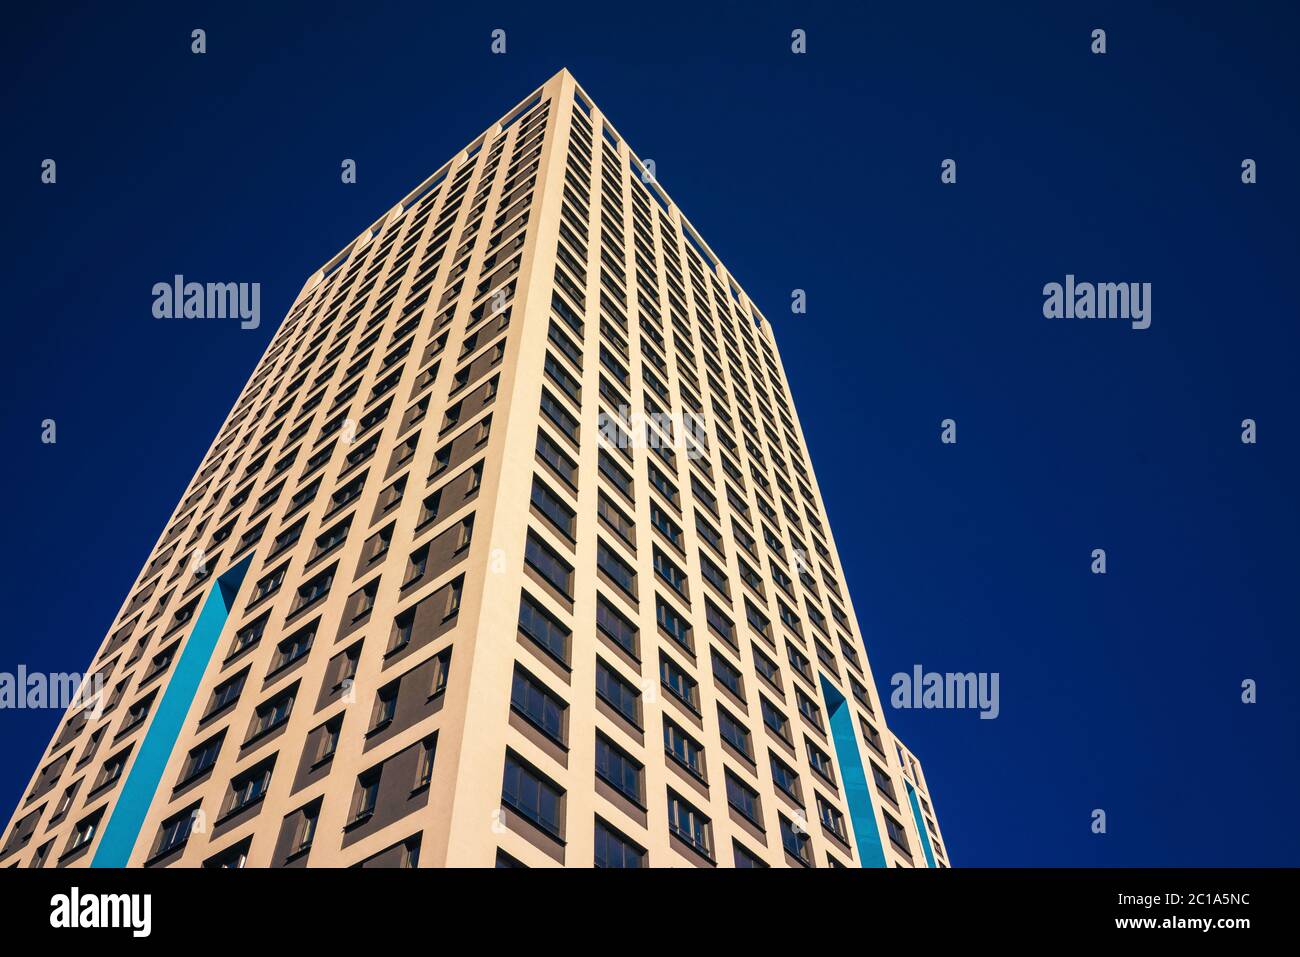 Moderno complejo de apartamentos de gran altura Foto de stock